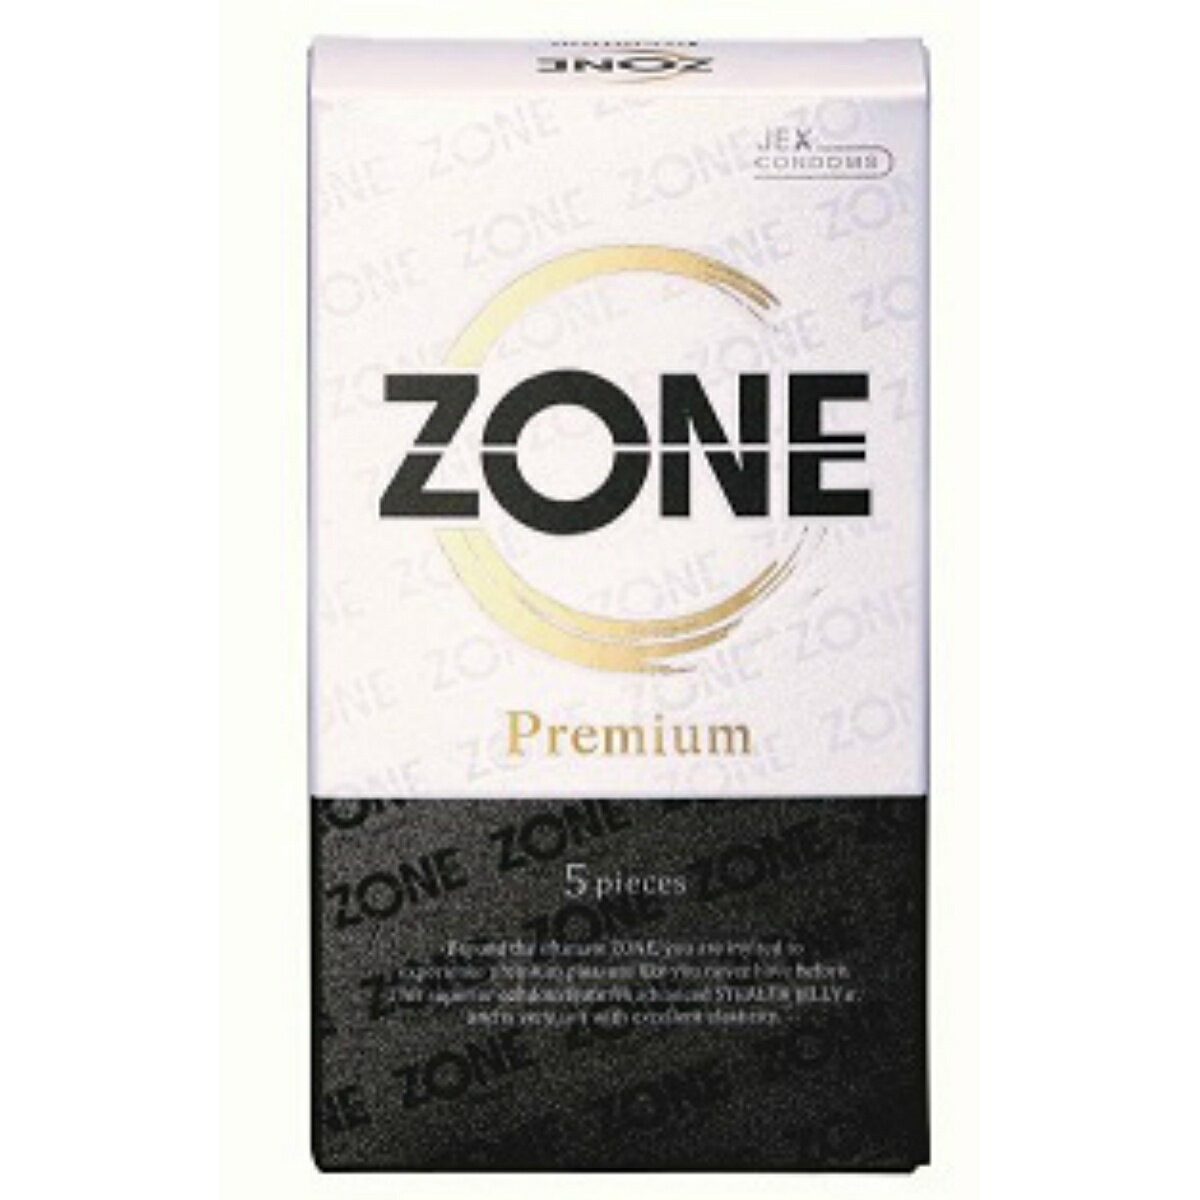 ジェクス ZONE Premium ゾーンプレミアム 5pieces(4973210030753)